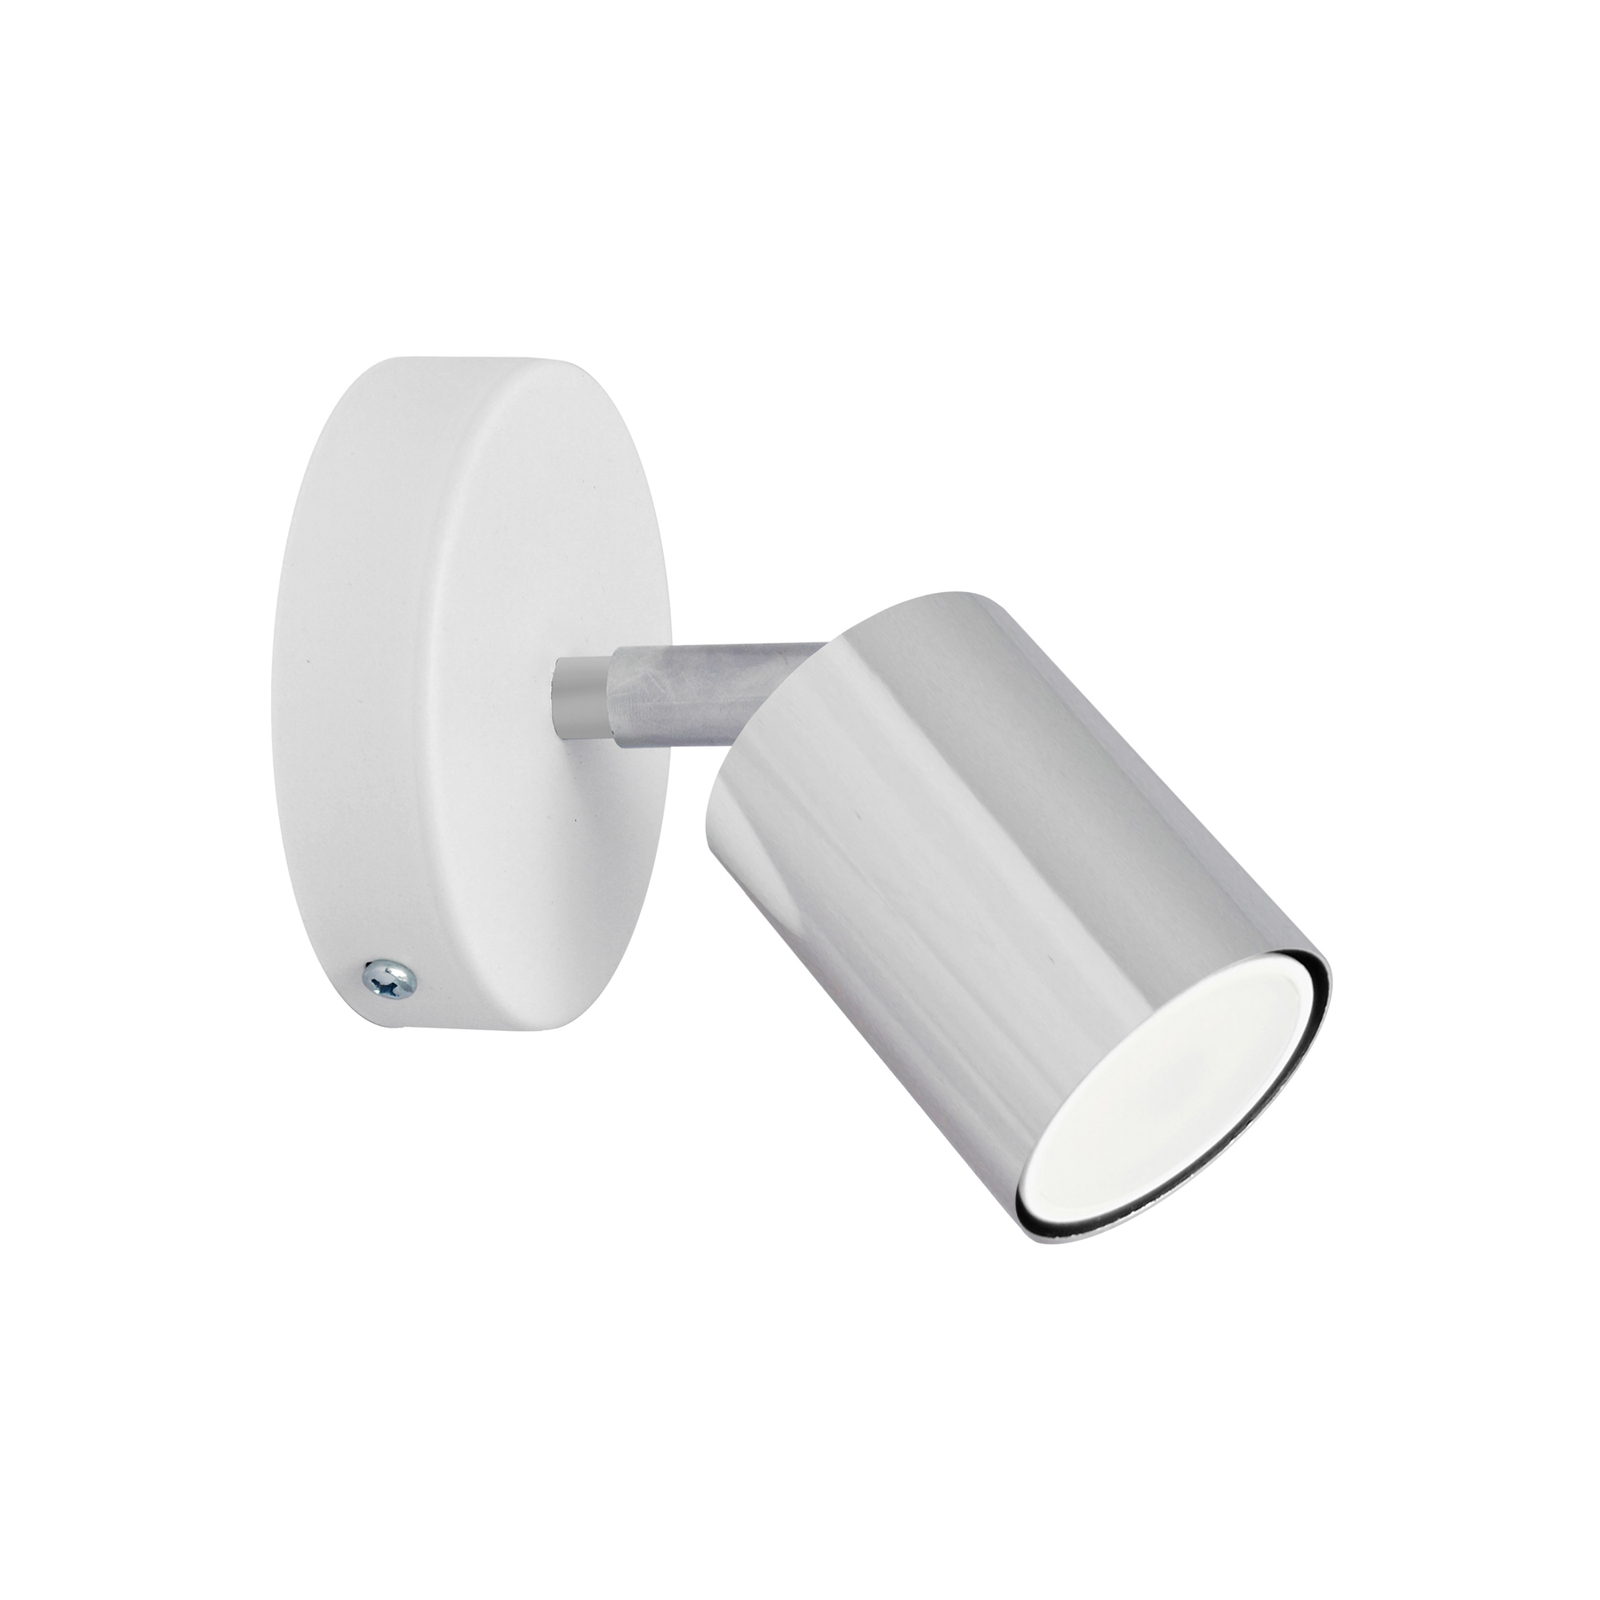 Tune II wall light, white/chrome, metal, E27, Ø 5.5 cm